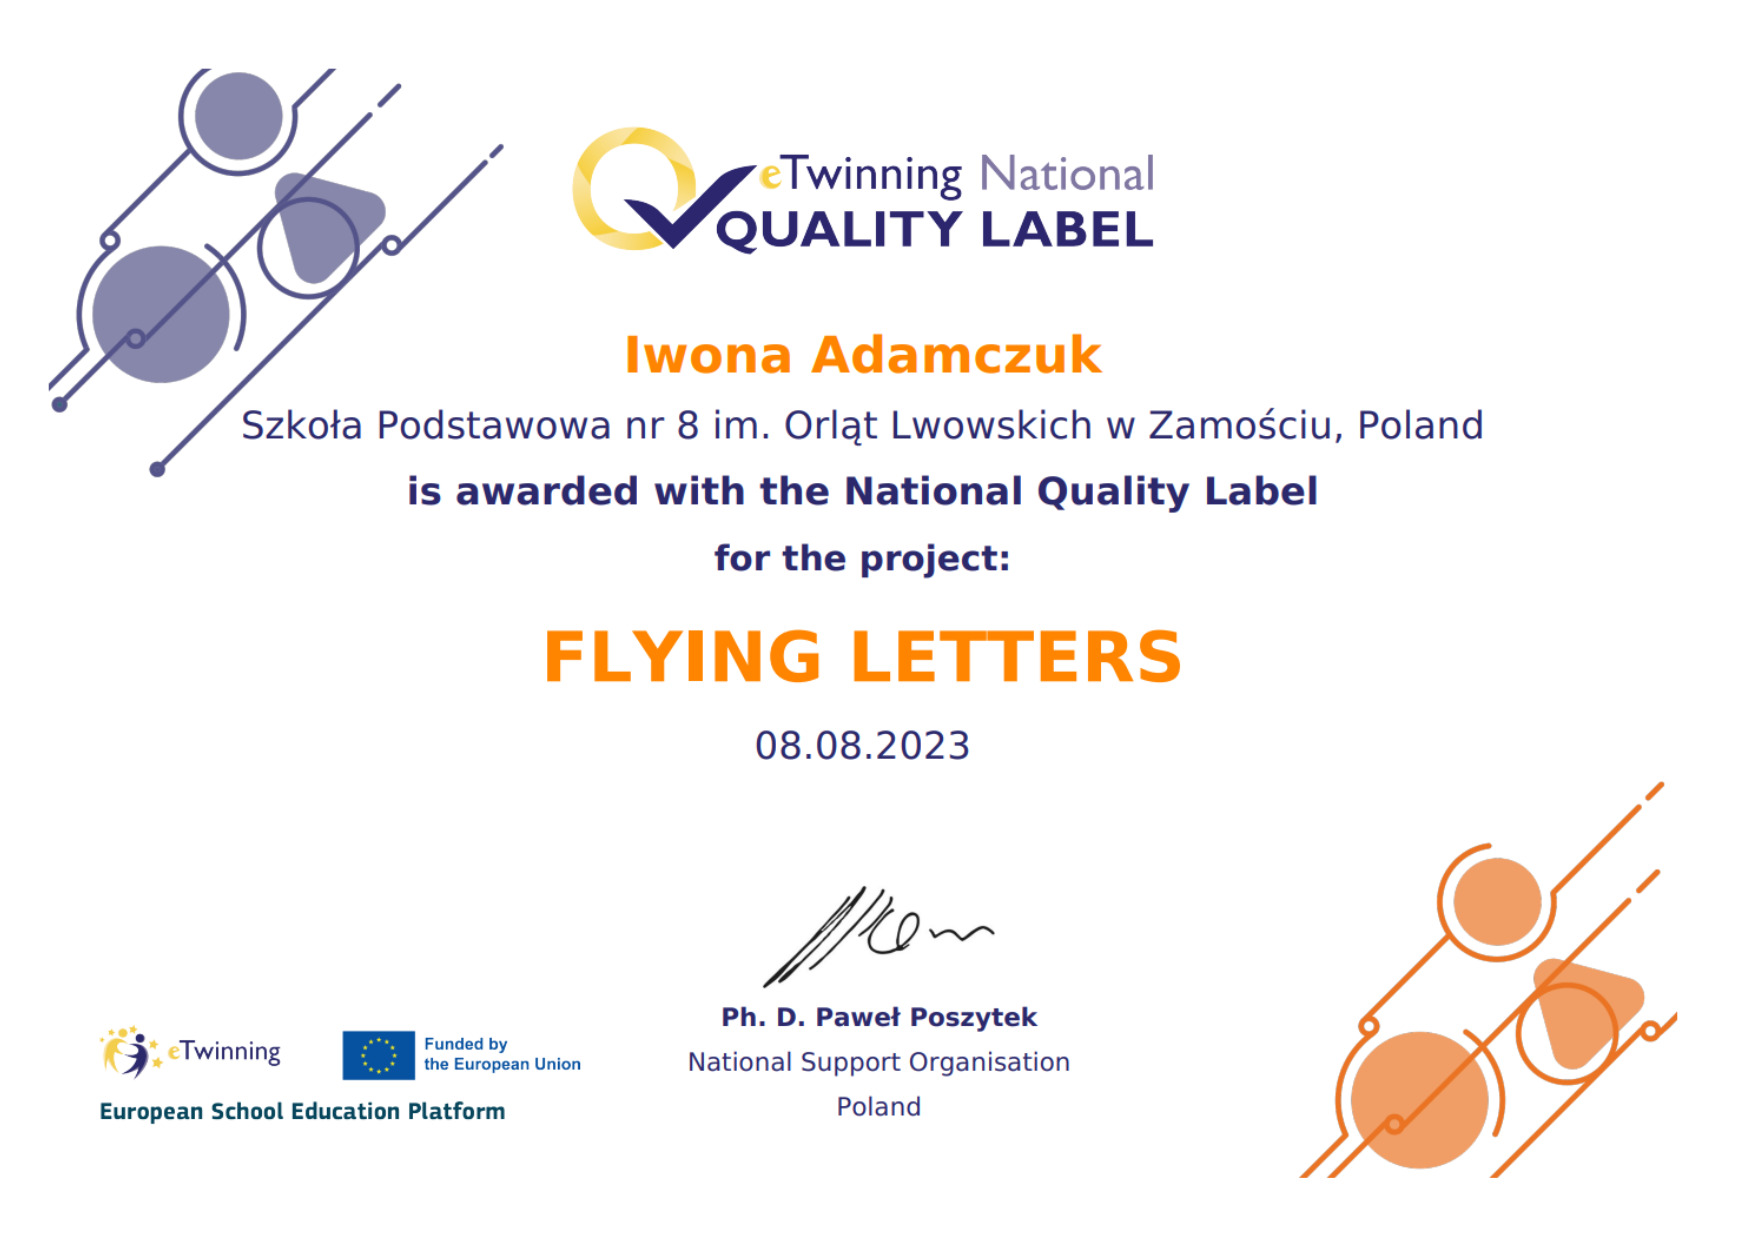 Projekt eTwinning "Flying Letters" nagrodzony Narodową Odznaką Jakości! - Obrazek 2